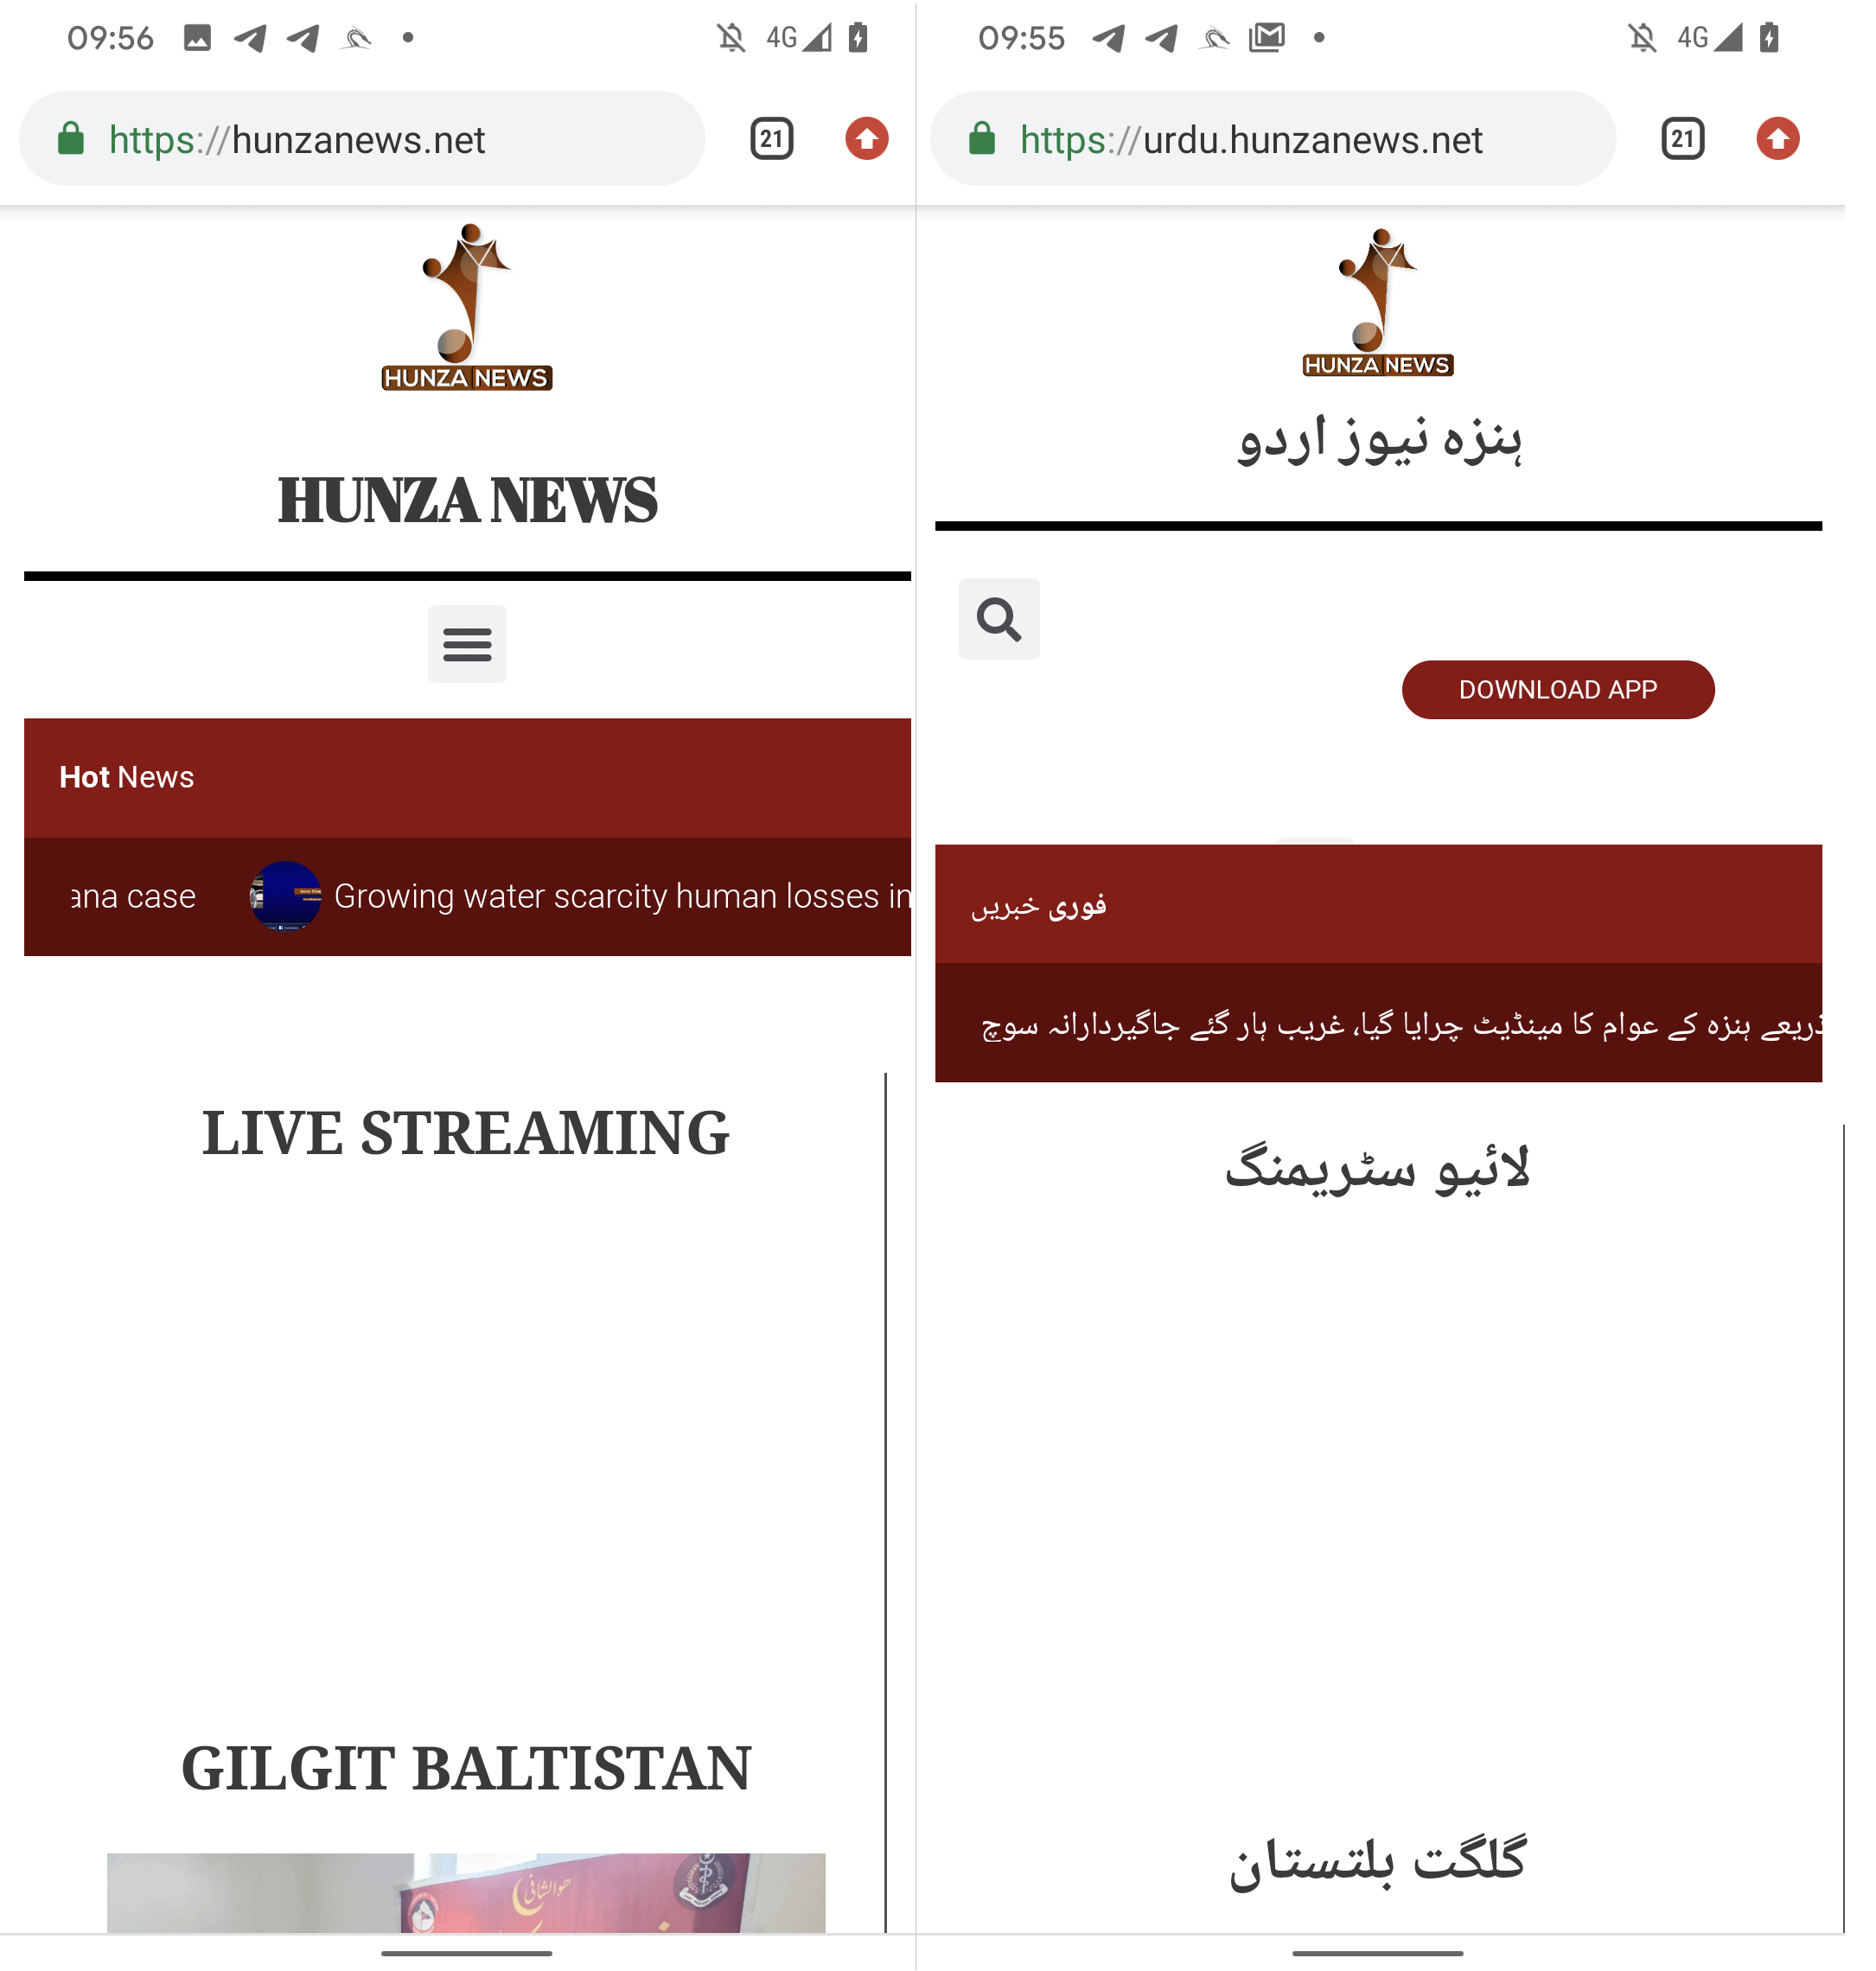 Hình 6 Phiên bản tiếng Anh (trái) và tiếng Urdu (phải) Hunza News